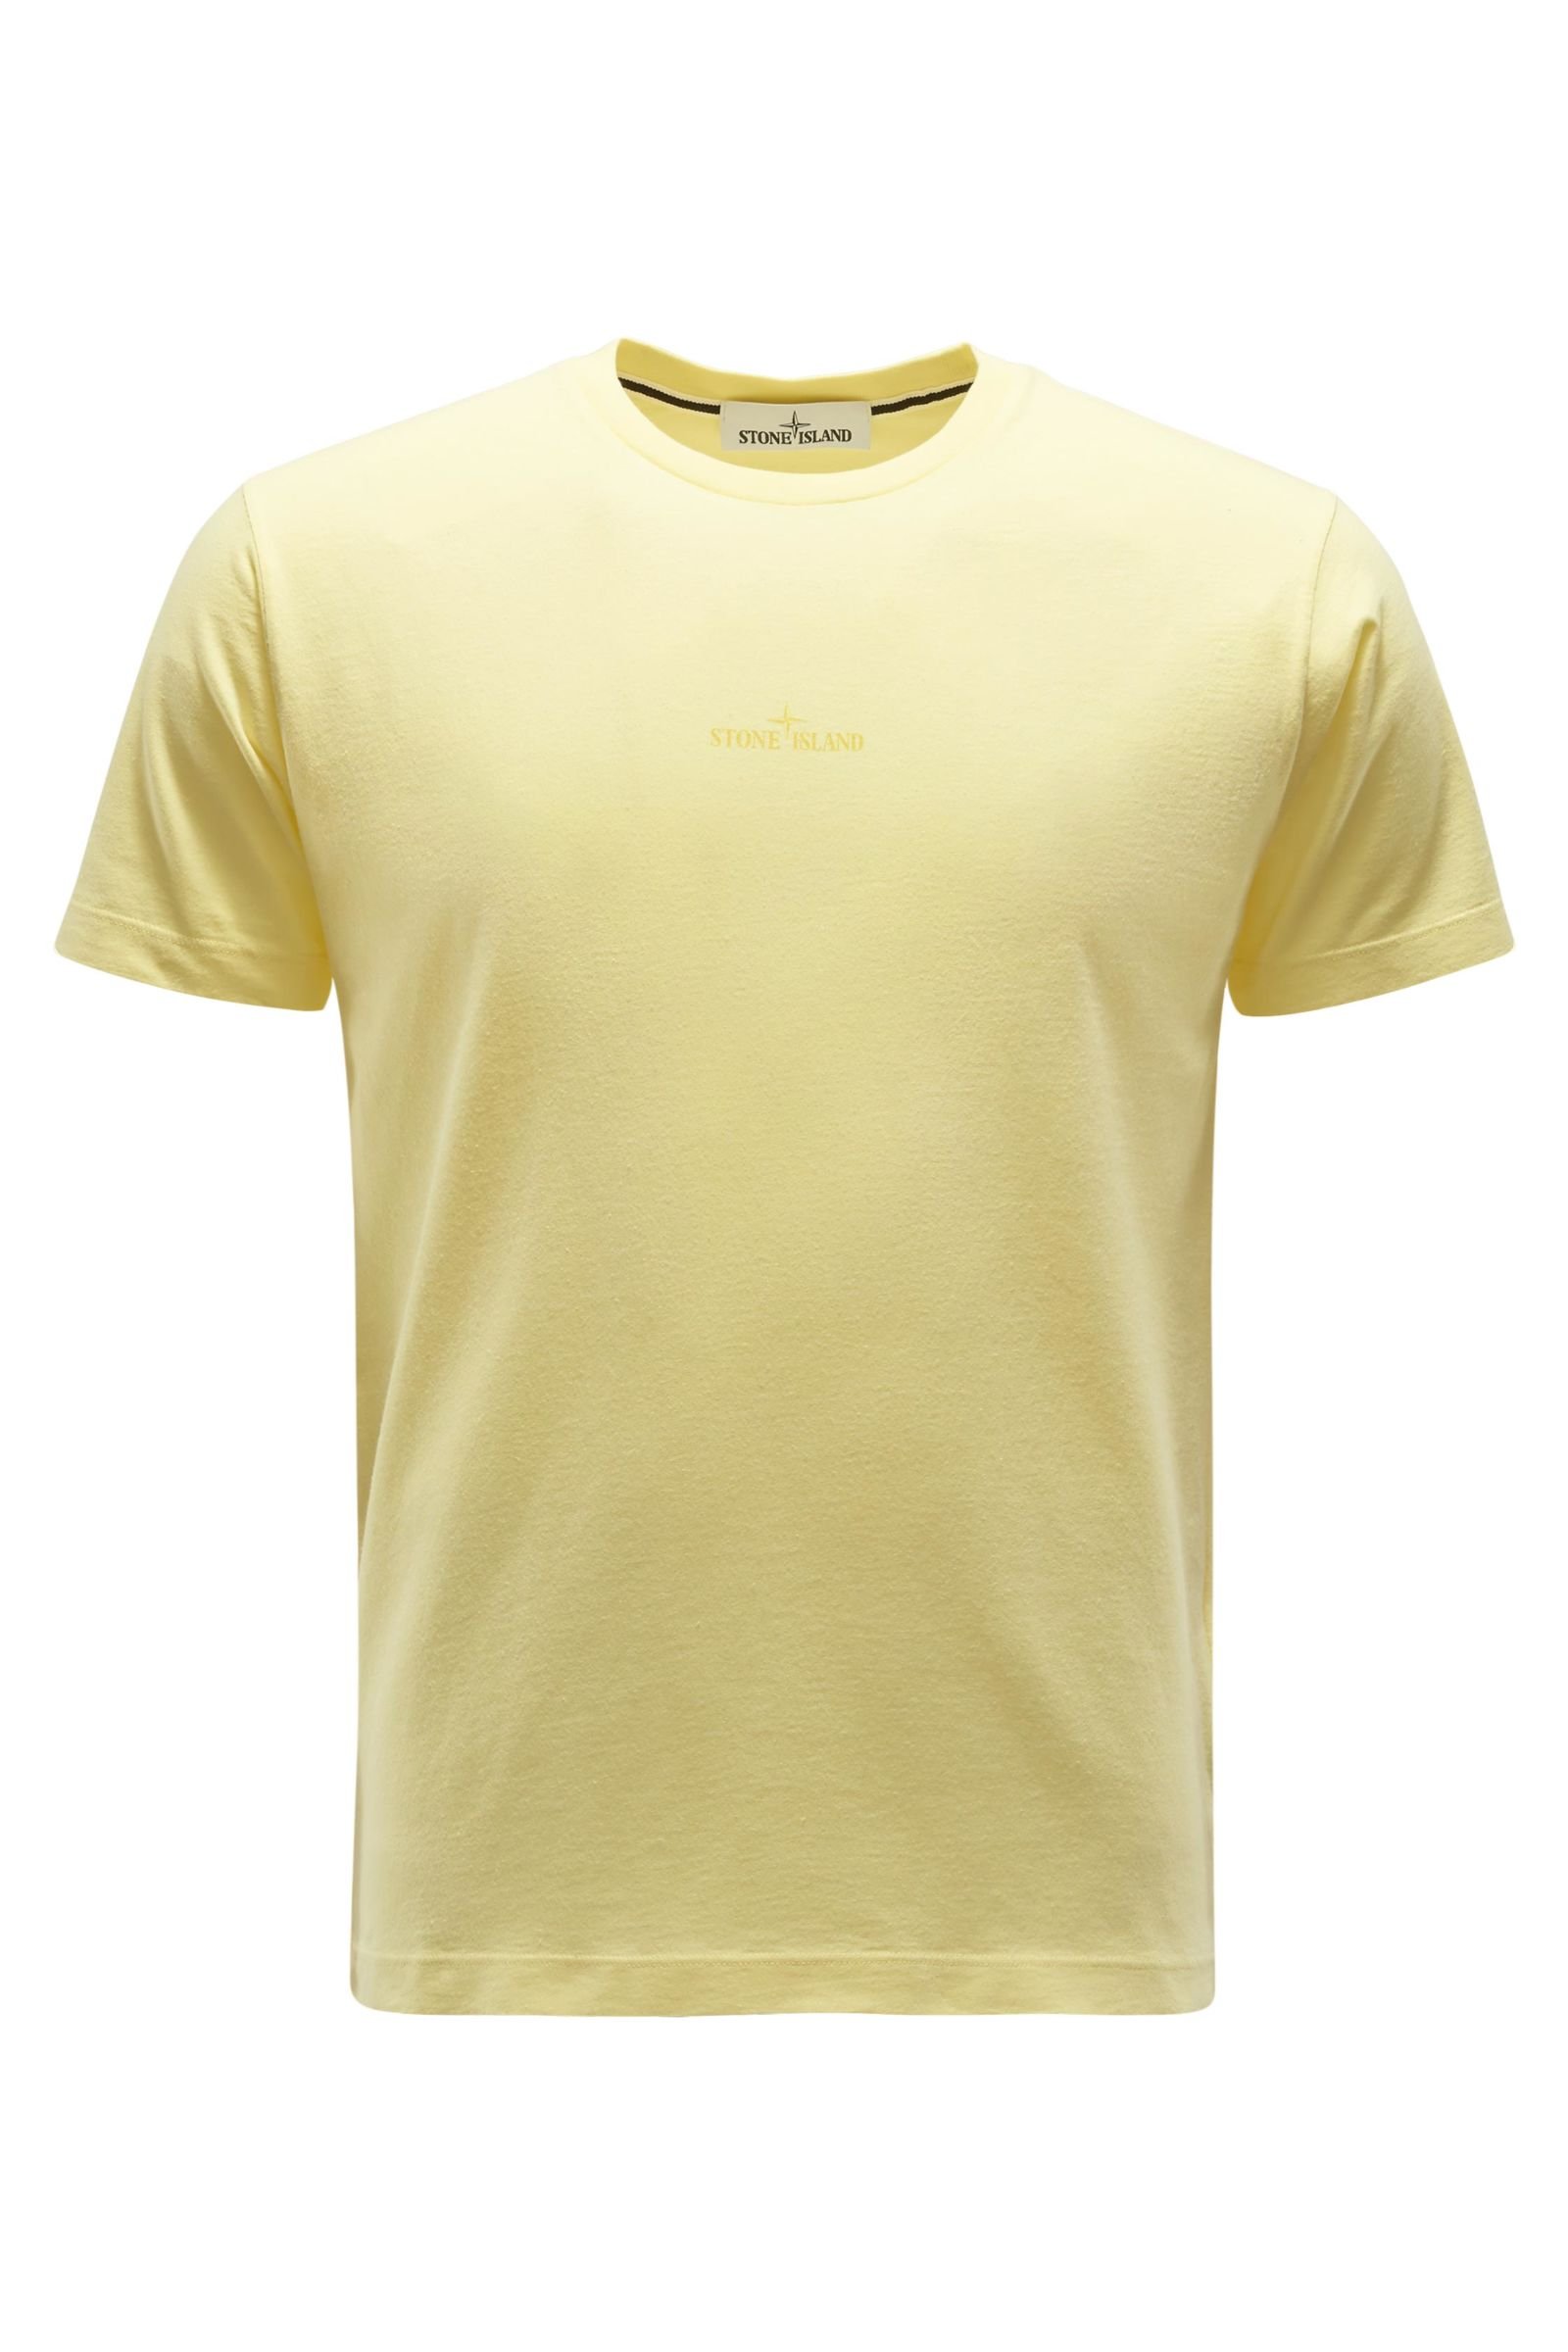 Crew neck T-shirt yellow